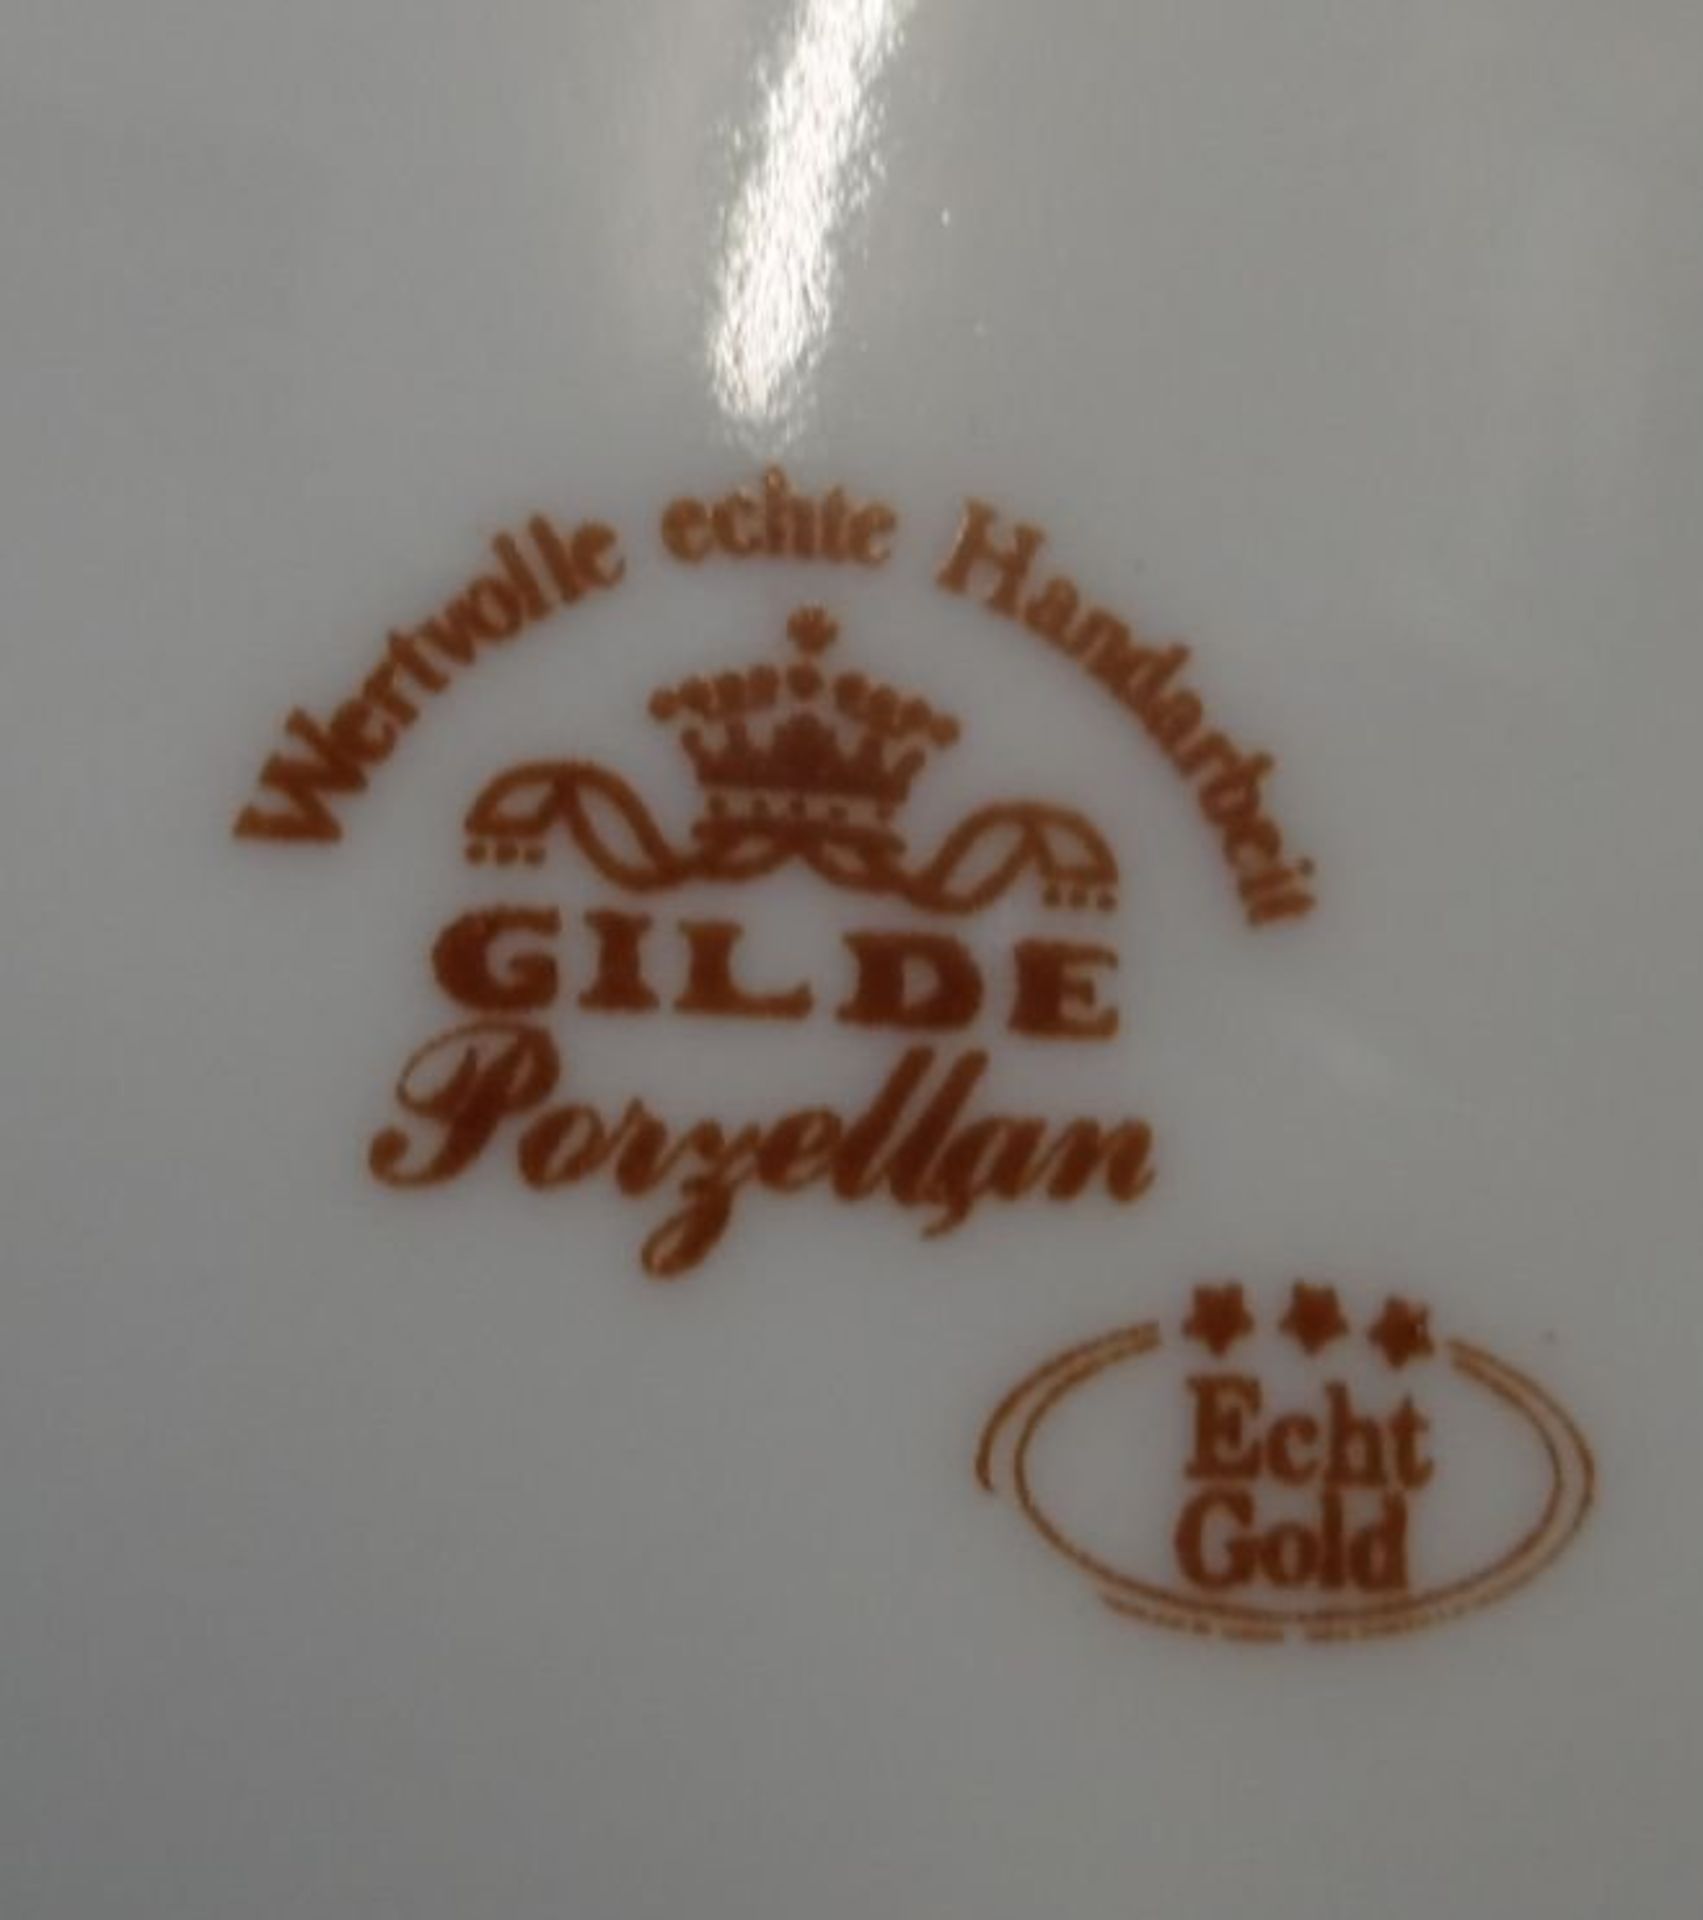 gr. Deckelvase, "Gilde" Goldblumen u. Reliefdekor, H-37 cm - Bild 4 aus 4